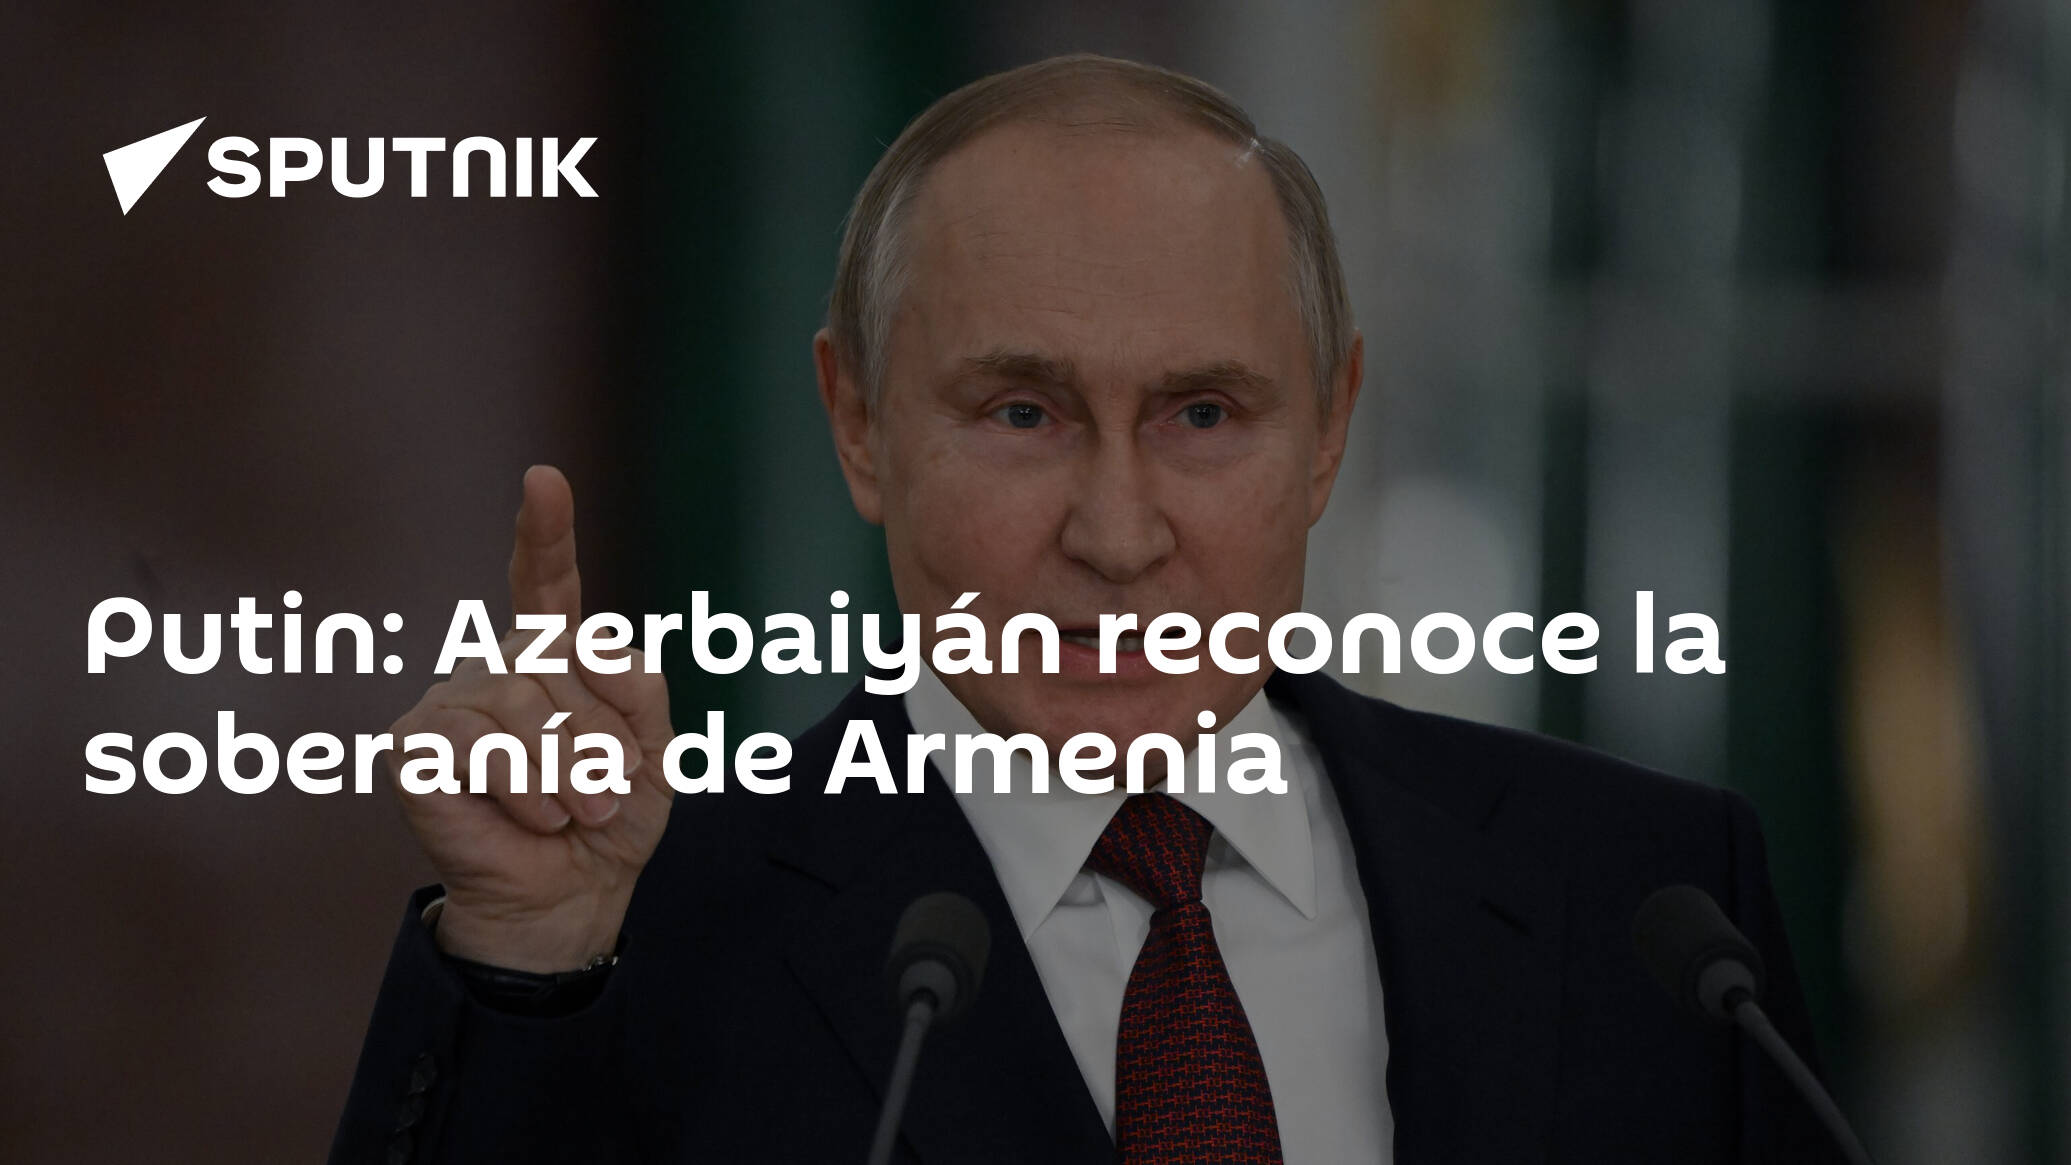 Putin: Azerbaijan recognizes Armenia’s sovereignty